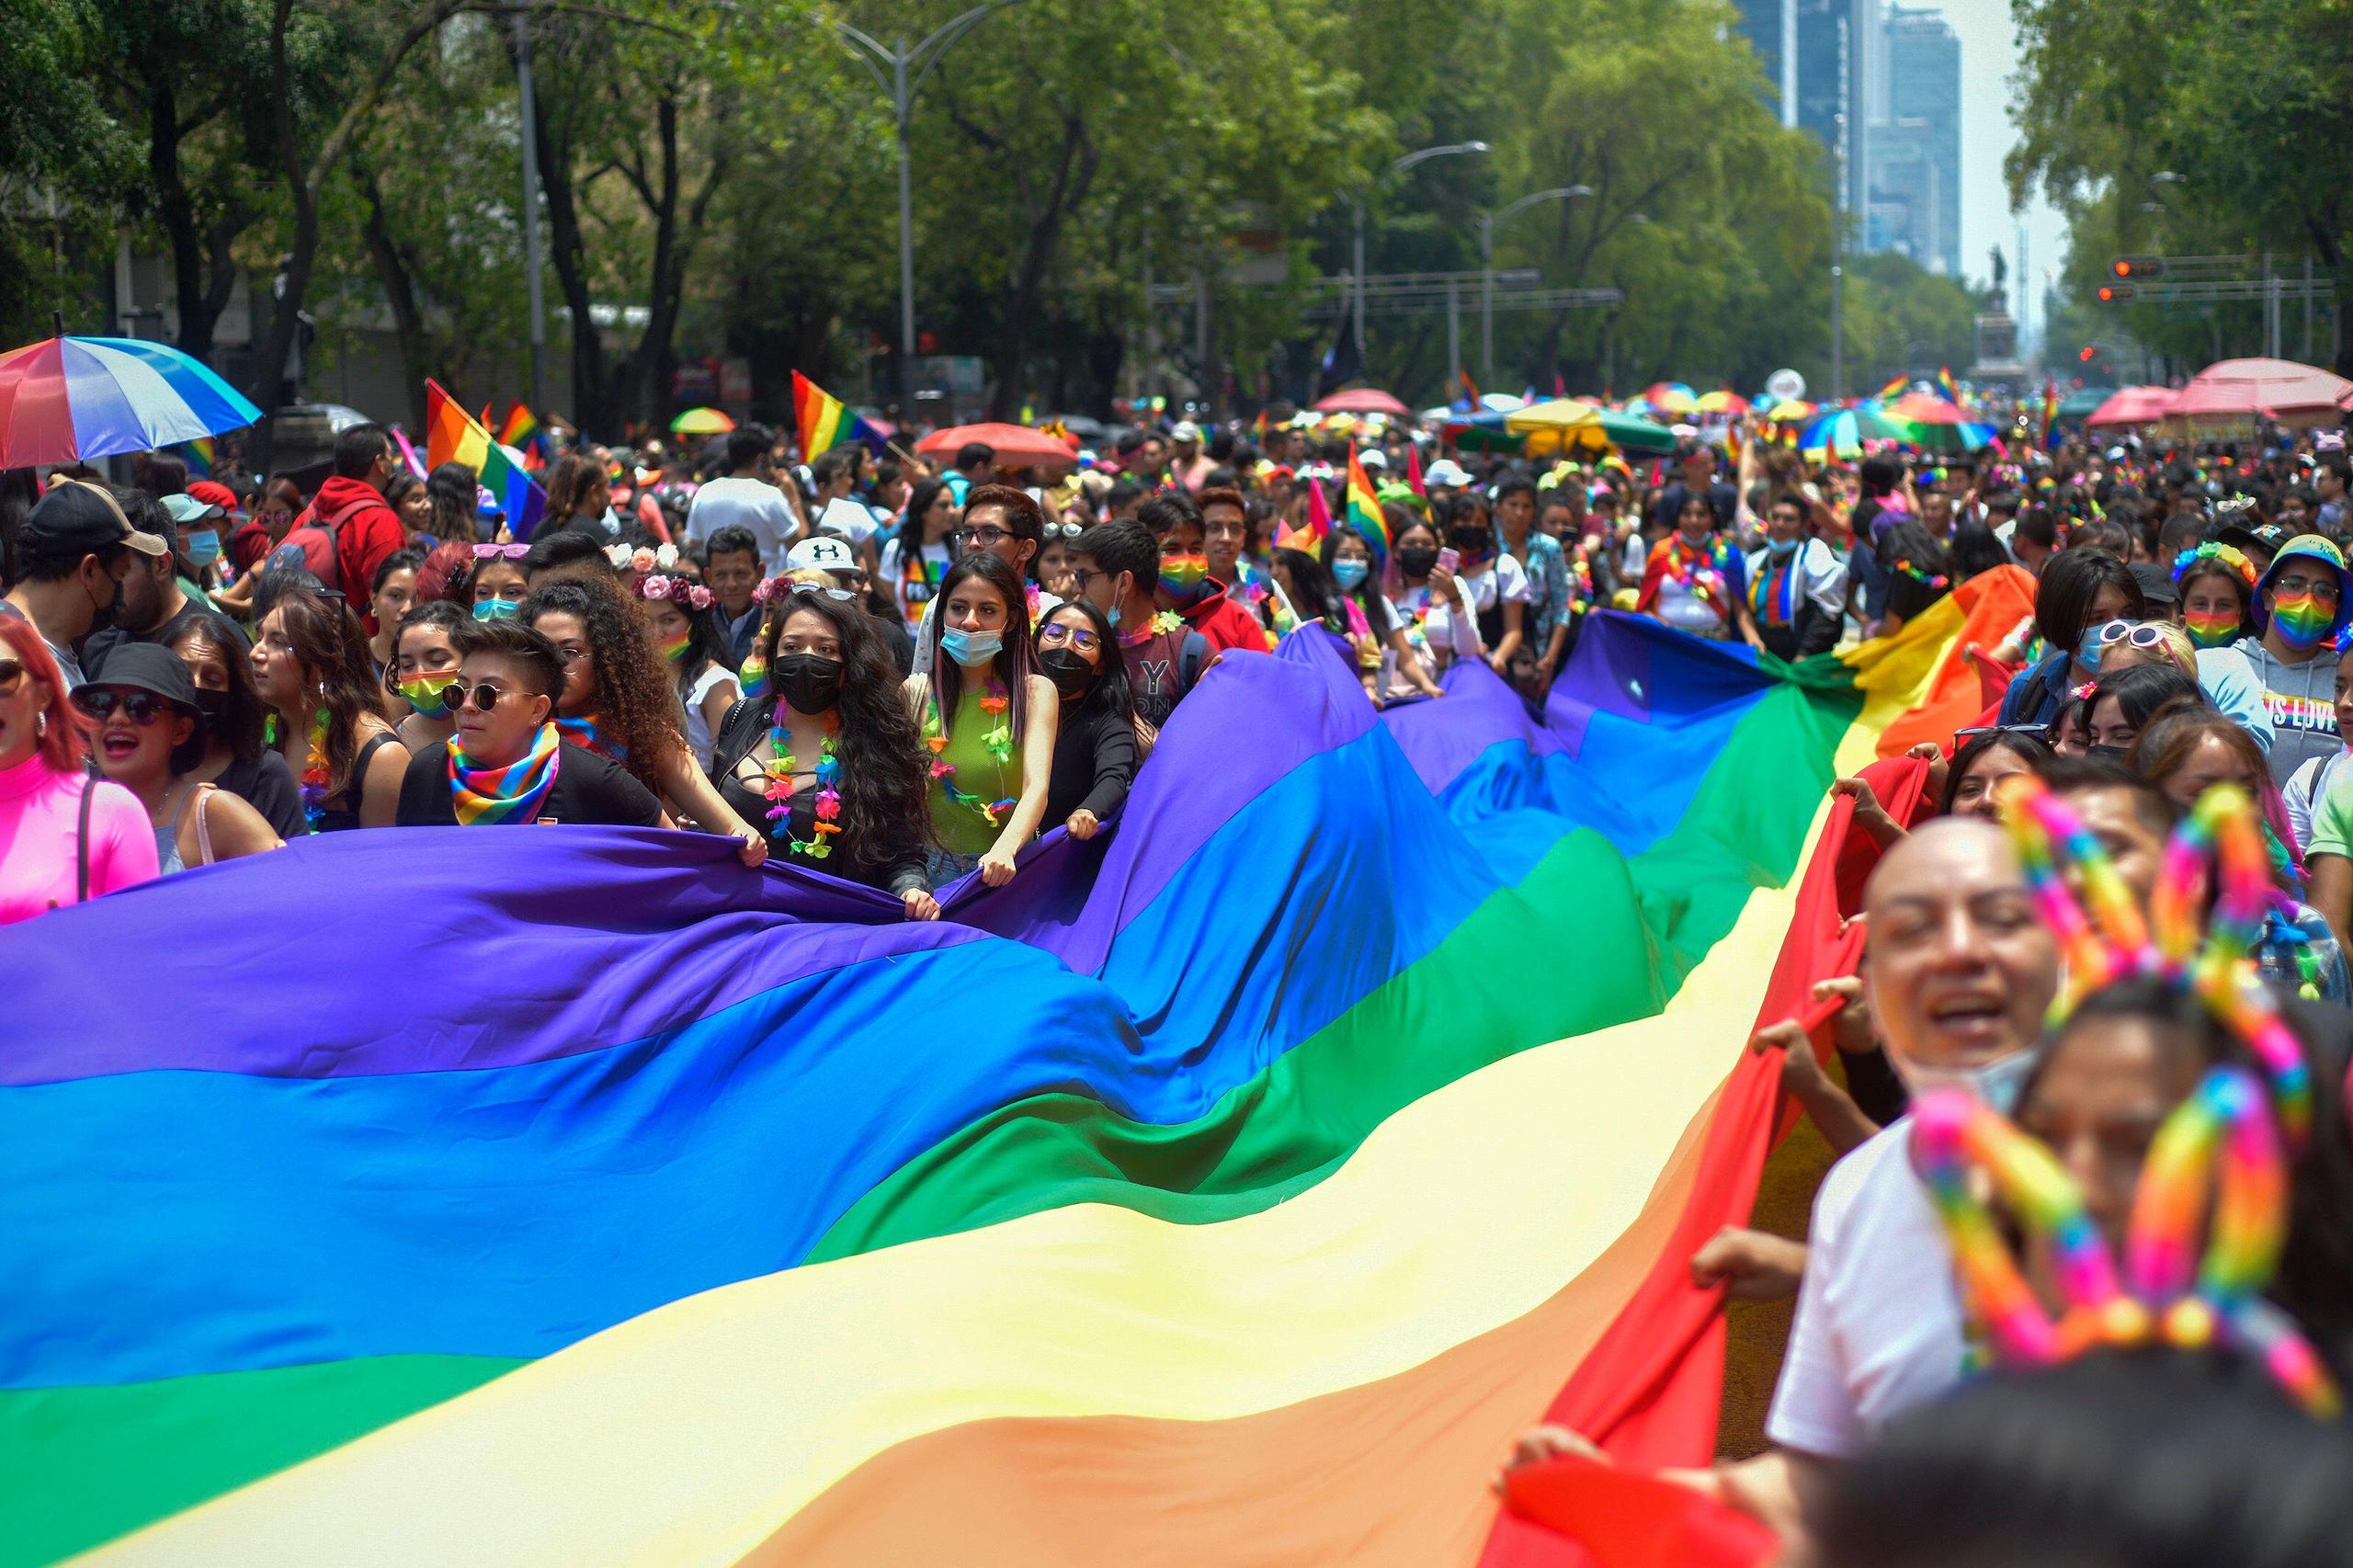 <p>Parada do orgulho LGBTQ+ nas ruas da Cidade do México. O país é um dos mais violentos contra pessoas LGBTQ+ e ativistas ambientais (Imagem: Mariana Gutierrez / Alamy)</p>